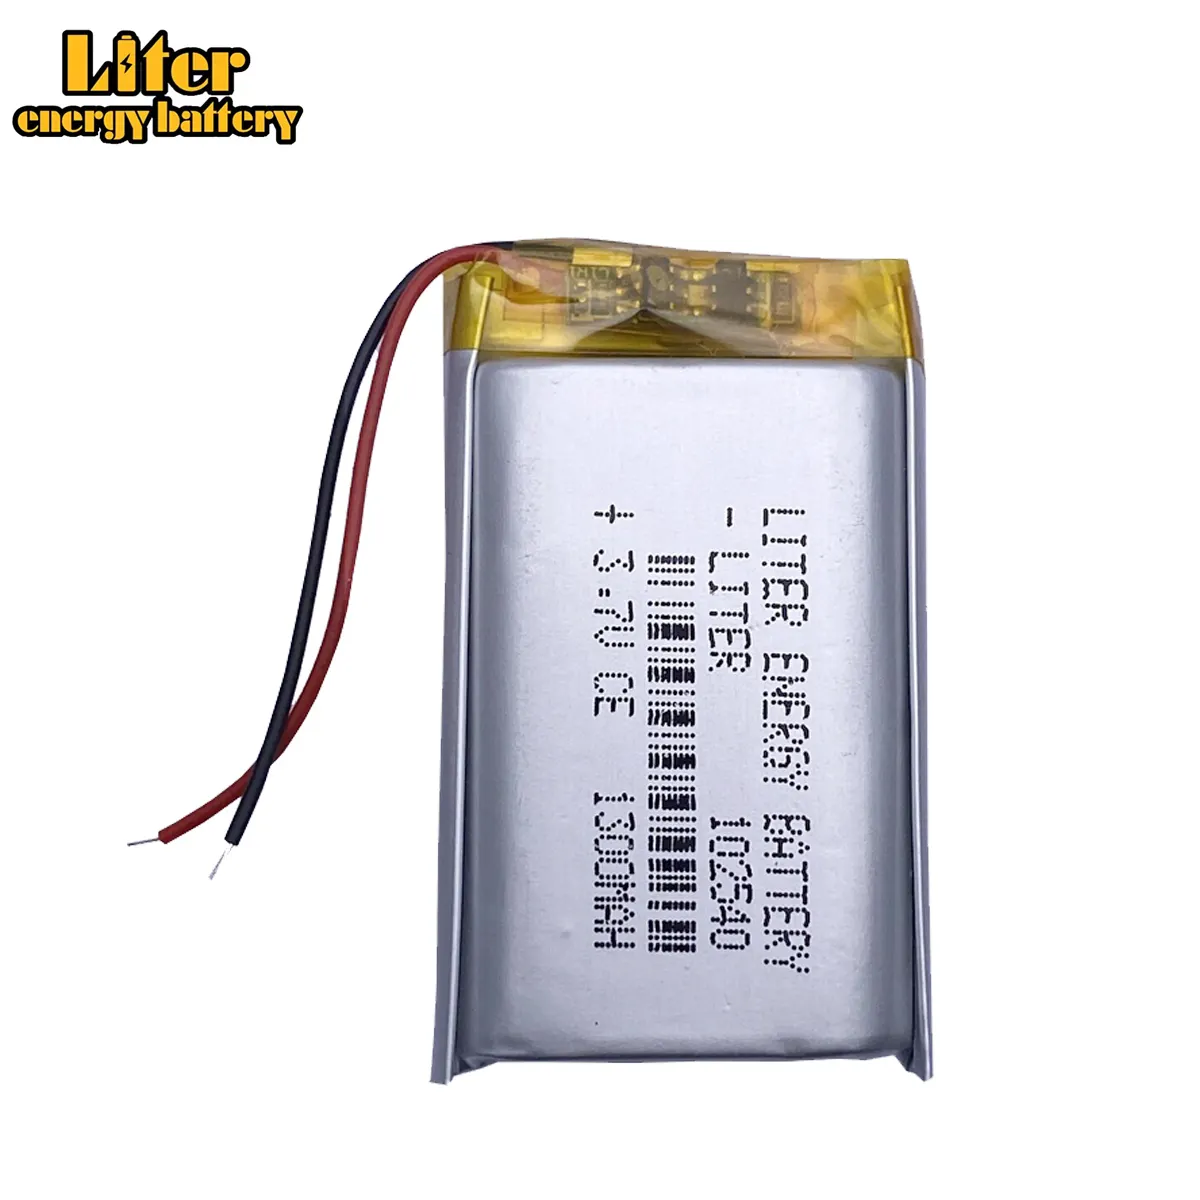 102540 1300mah 3.7v batteria ricaricabile agli ioni di litio batteria ai polimeri di litio CE FCC ROHS UN38.3 MSDS